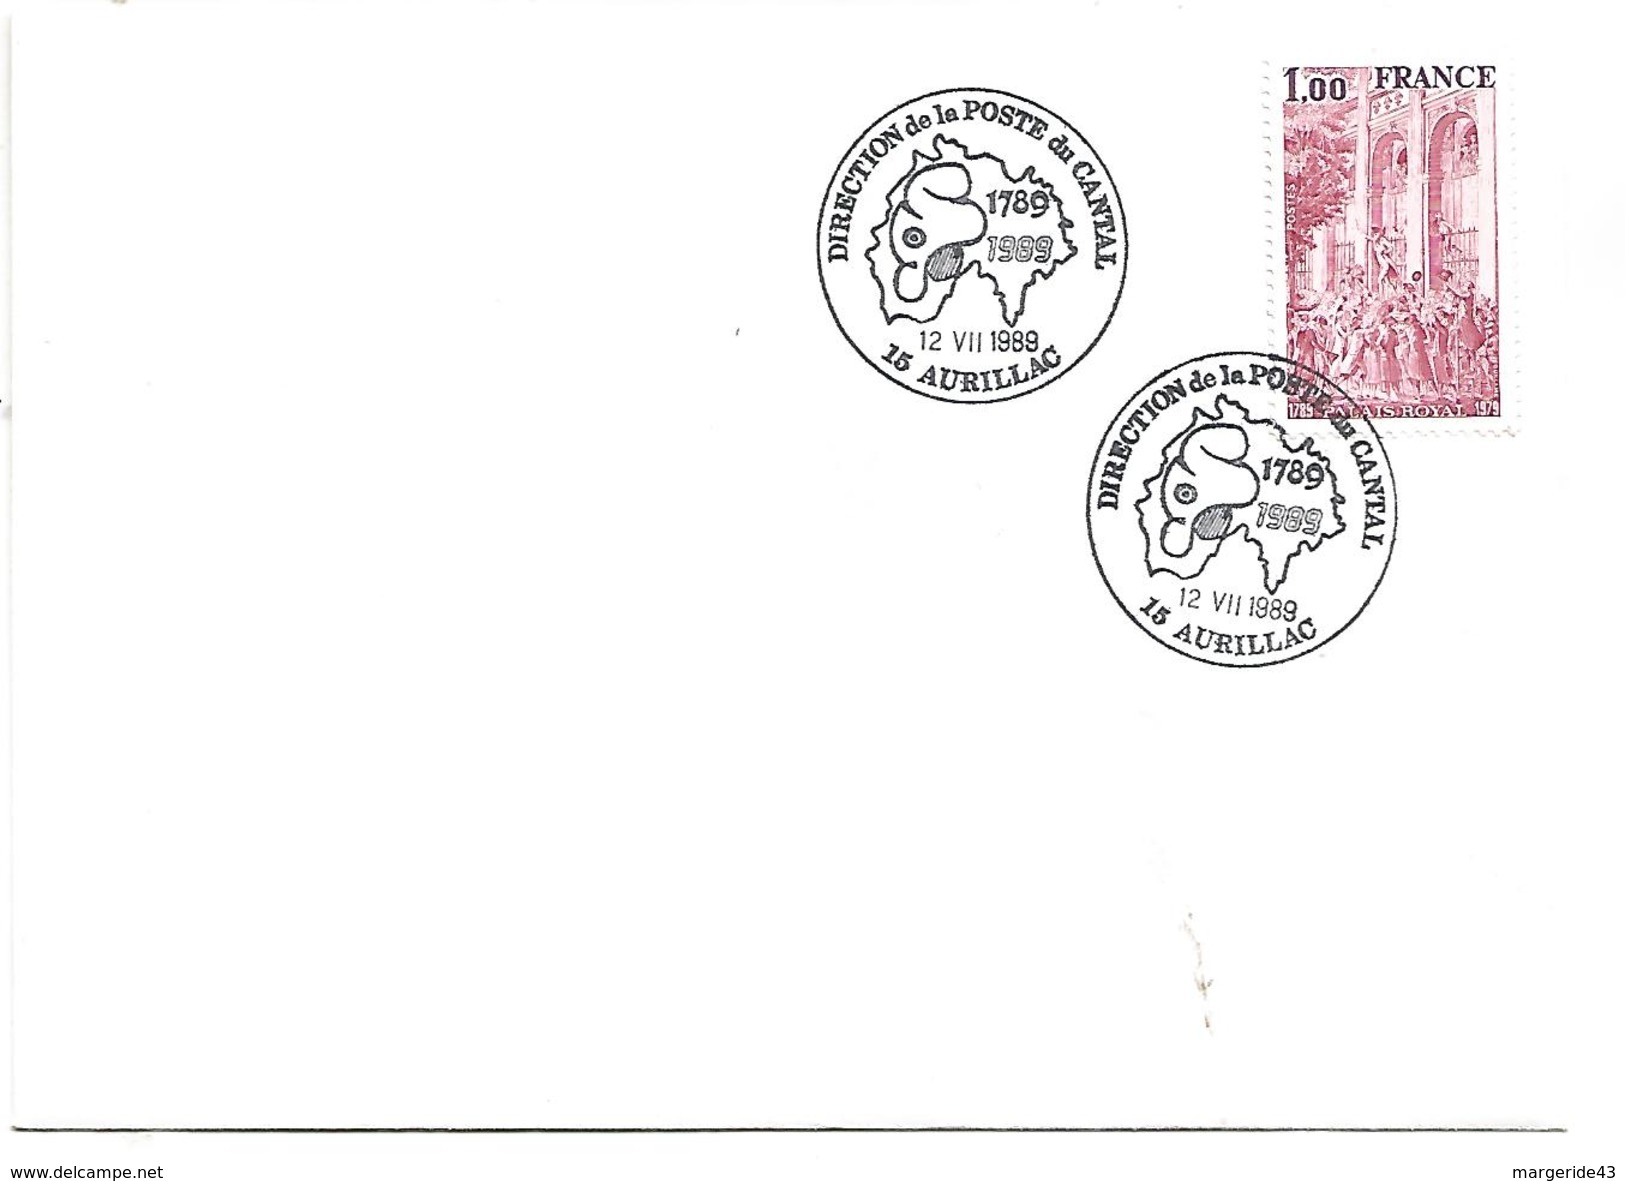 OBLITERATION COMMEMORATIVE BICENTENAIRE REVOLUTION DIRECTION DE LA POSTE DU CANTAL AURILLAC 1989 - Commemorative Postmarks